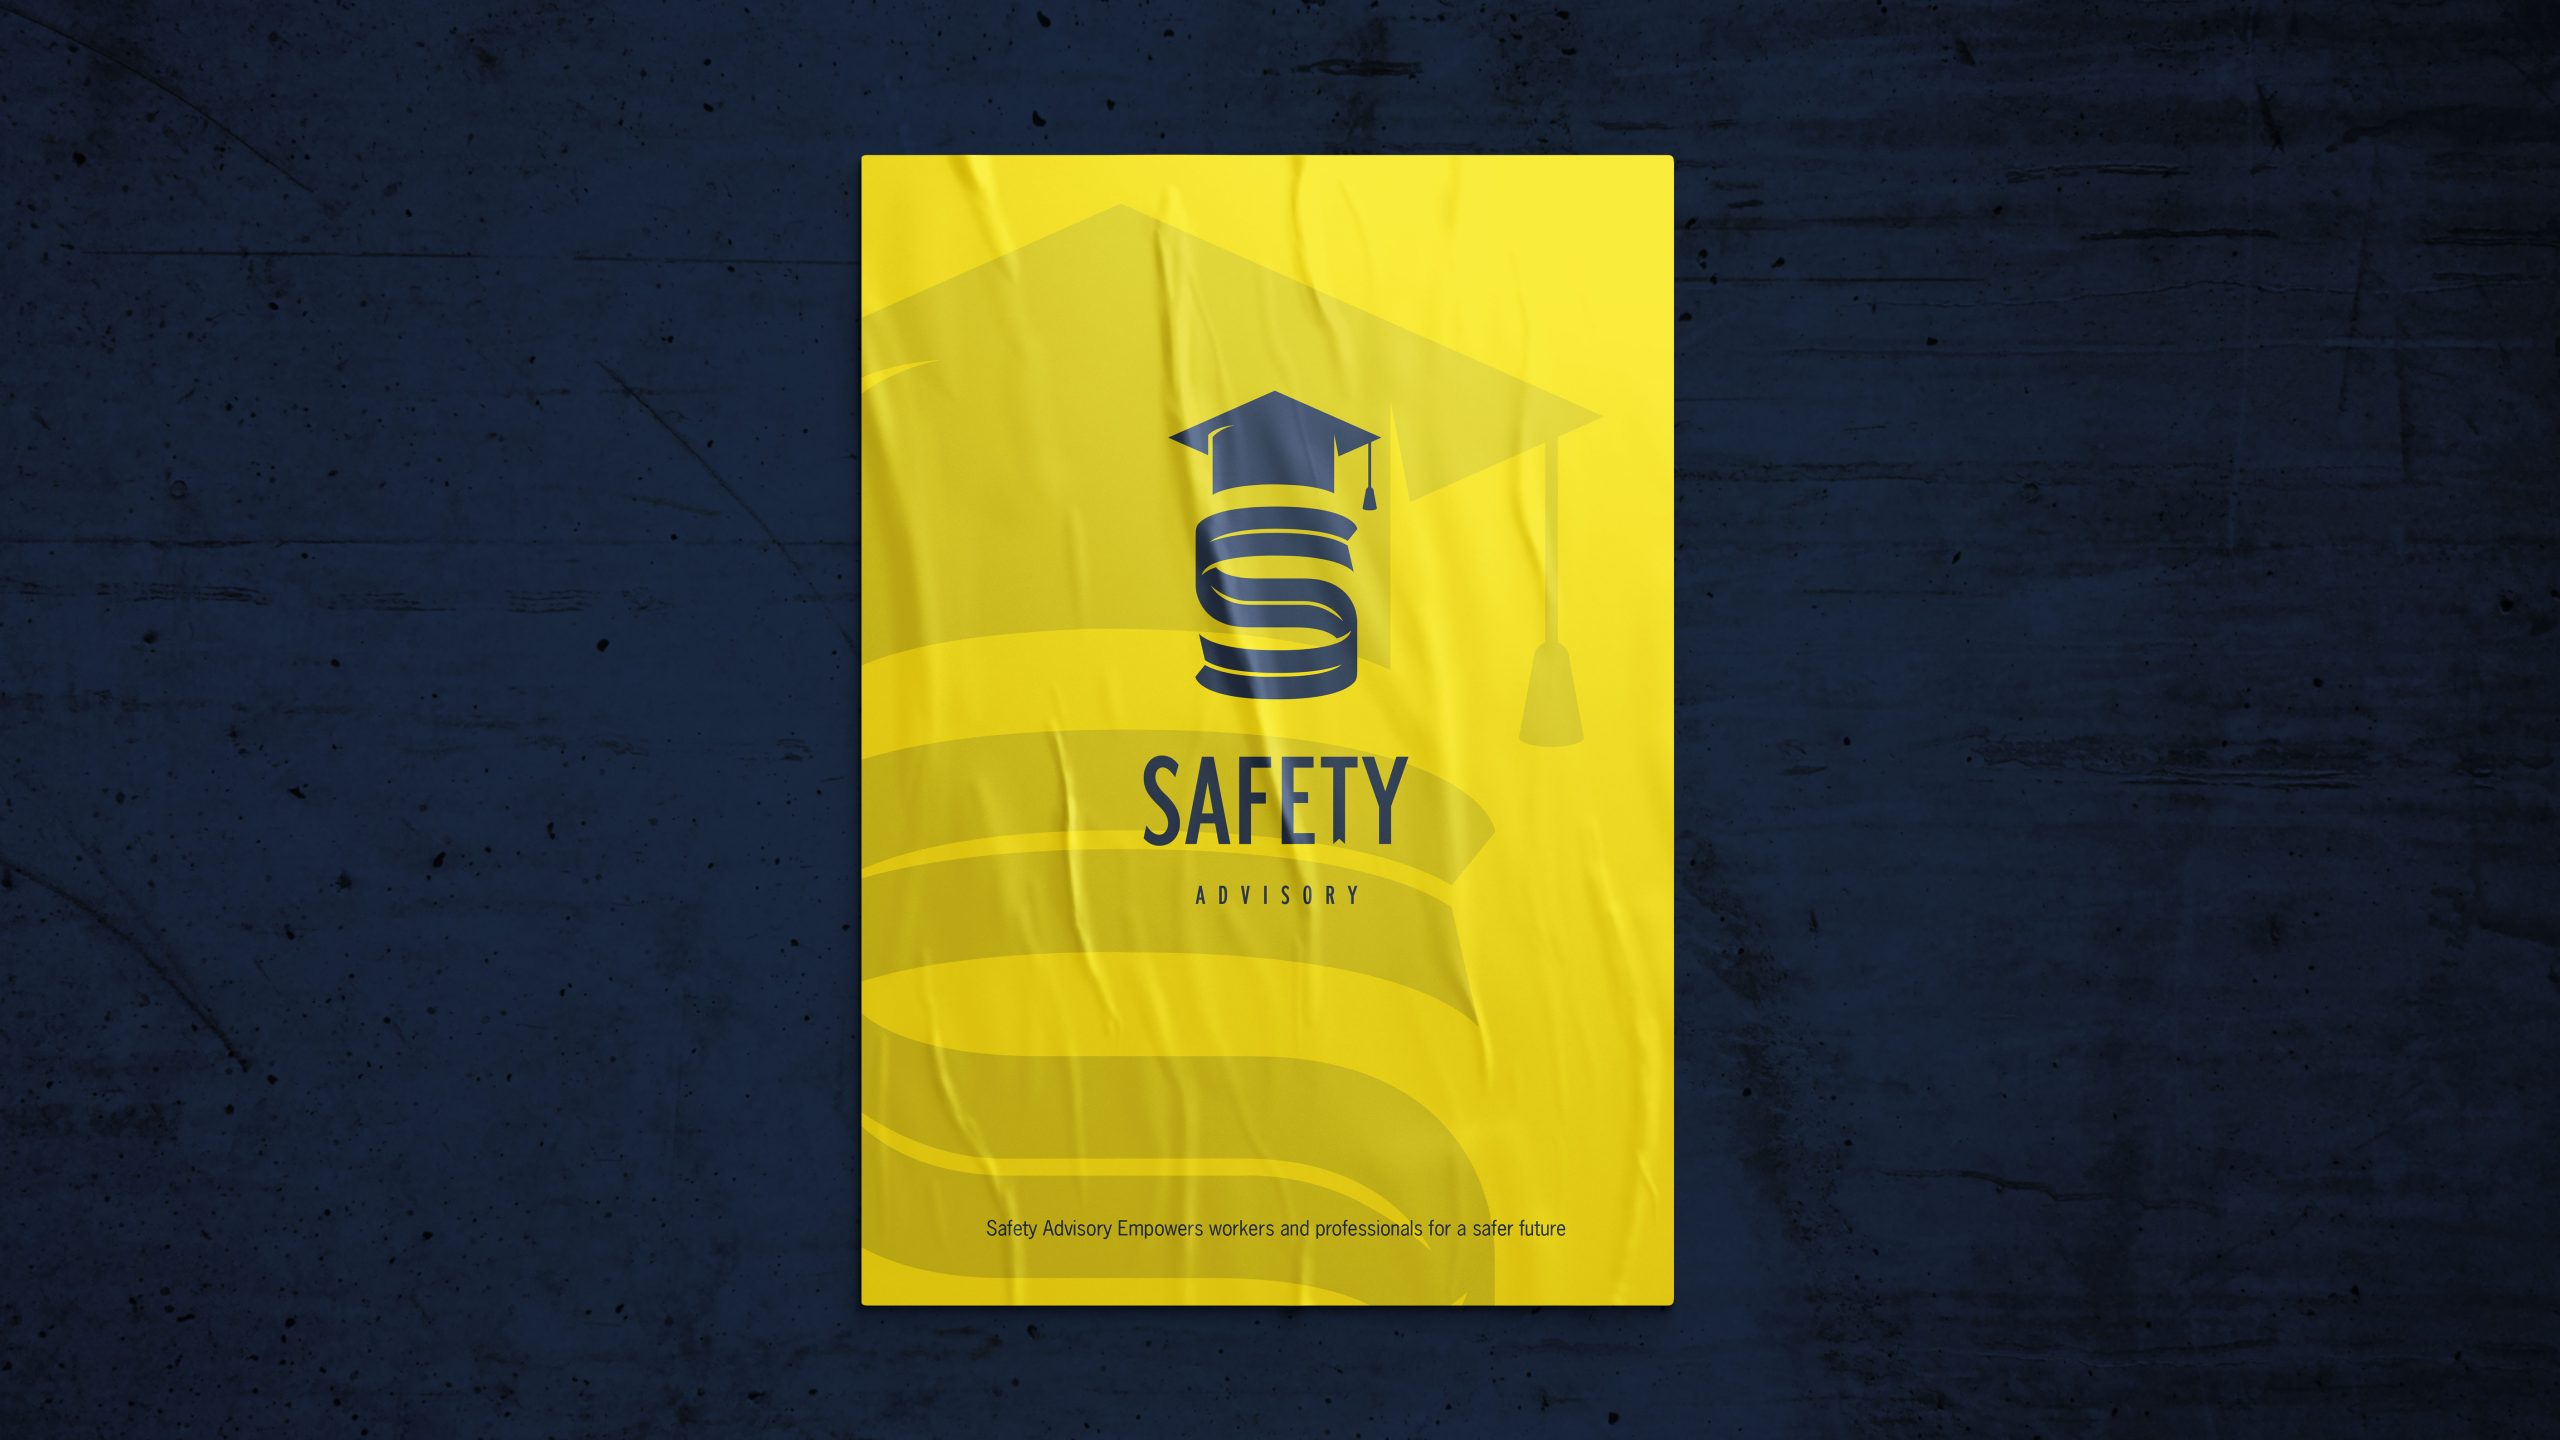 safety advisroy poster scaled - Safety Advisory - The Design Boutique -safety advisroy poster scaled